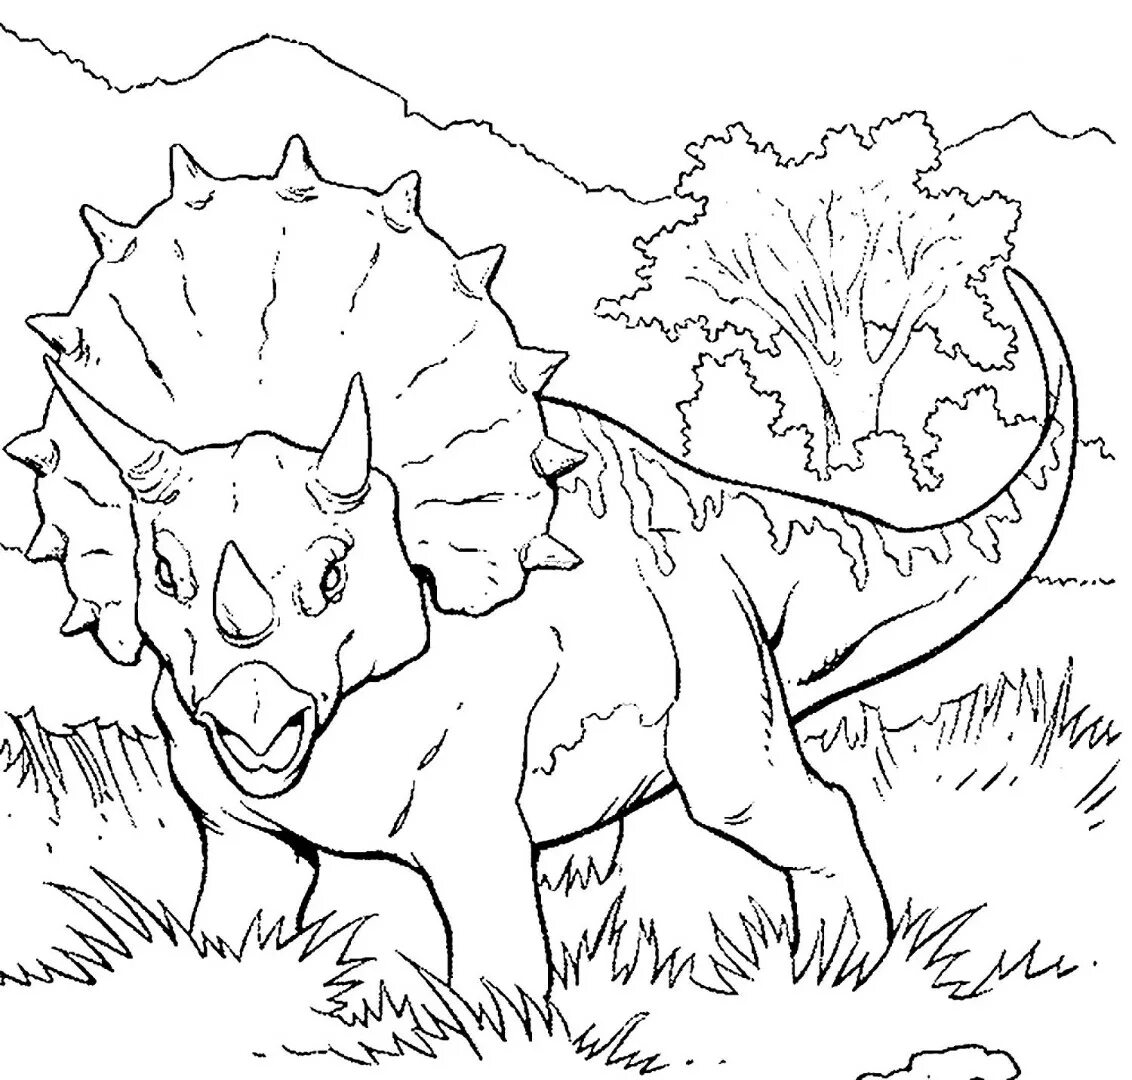 Динозавры раскраска а4. Раскраска динозавры мир Юрского периода Трицератопс. Динозавр Трицератопс раскраска для детей. Трицератопс парк Юрского периода. Динозавр раскраска для детей мир Юрского периода.